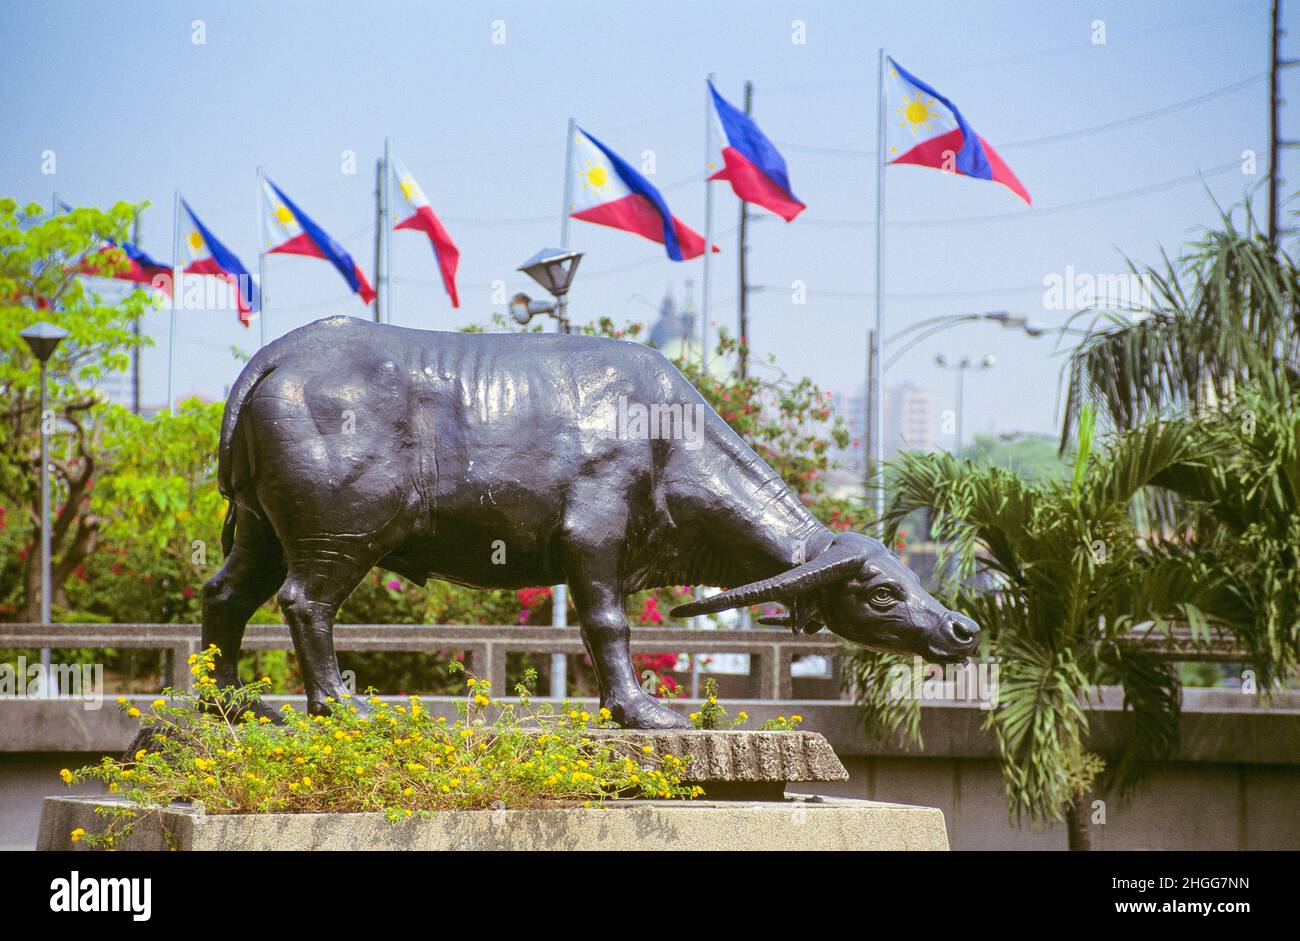 Una statua a grandezza naturale di carabao (bufalo d'acqua) sul Burnham Green nella sezione sud-ovest del Parco Rizal a Manila, Luzon, nelle Filippine. Una serie di bandiere nazionali delle Filippine può essere vista sullo sfondo. Rizal Park (conosciuto anche come Luneta Park, o semplicemente Luneta) è un parco urbano storico nel quartiere Ermita di Manila. E' uno dei parchi urbani piu' grandi in Asia, che copre un'area di 58 ettari, adiacente alla storica citta' murata di Intramuros. Situato sulla riva orientale della Baia di Manila, il parco gioca un ruolo significativo nella storia delle Filippine. Foto Stock